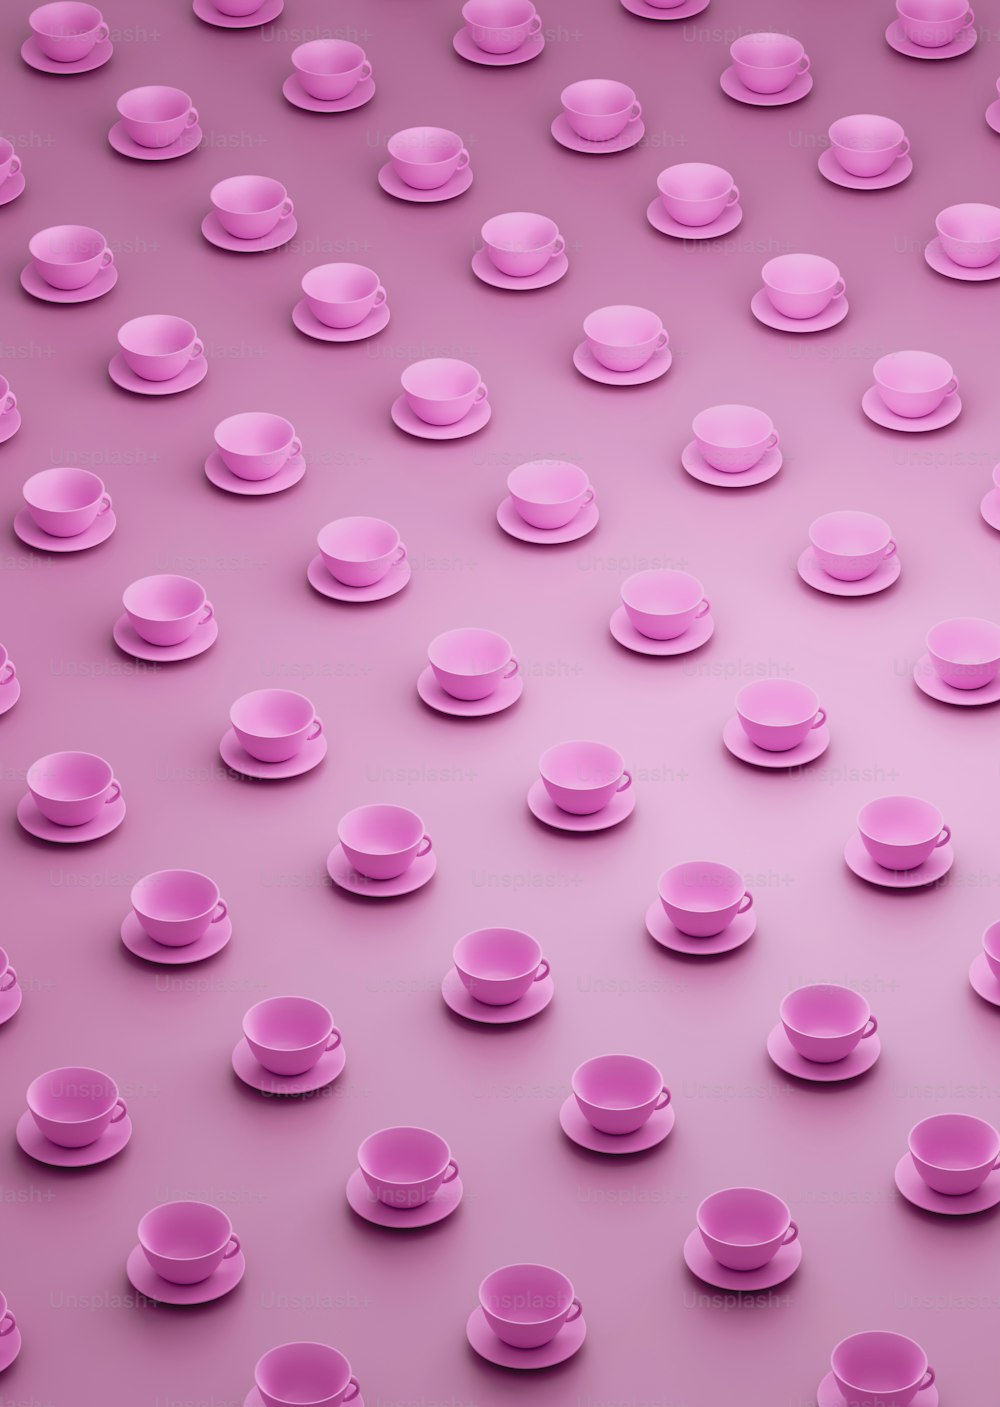 Un grupo de tazas y platillos rosados sobre un fondo rosa